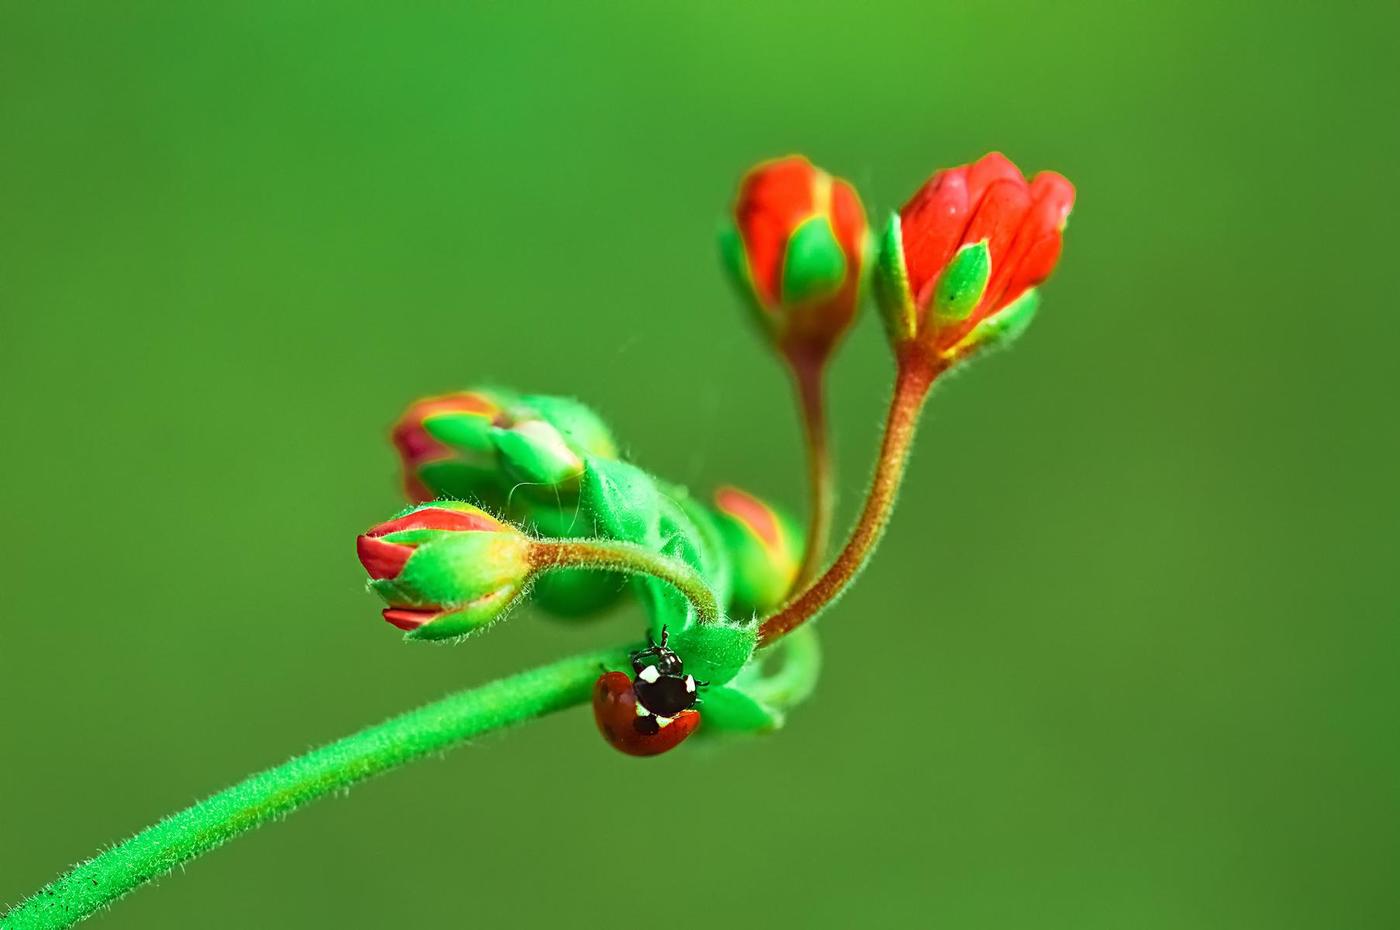 লাল ফুল উপর Ladybug